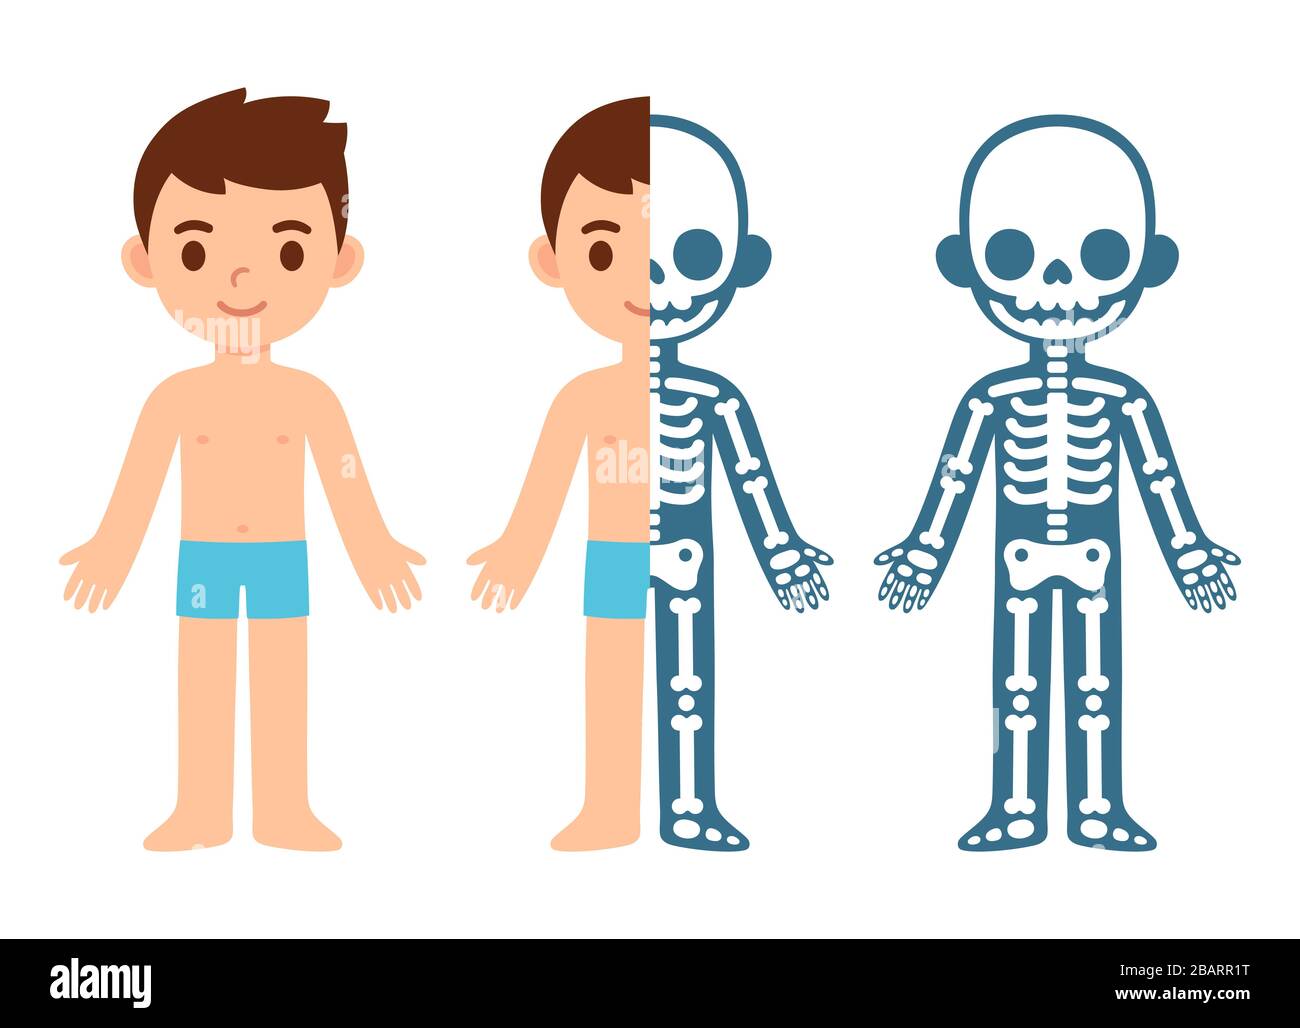 Graphique d'anatomie du squelette de garçon de dessin animé. Illustration vectorielle plate simple de la section transversale du système squelettique enfant. Clip vectoriel isolé Illustration de Vecteur